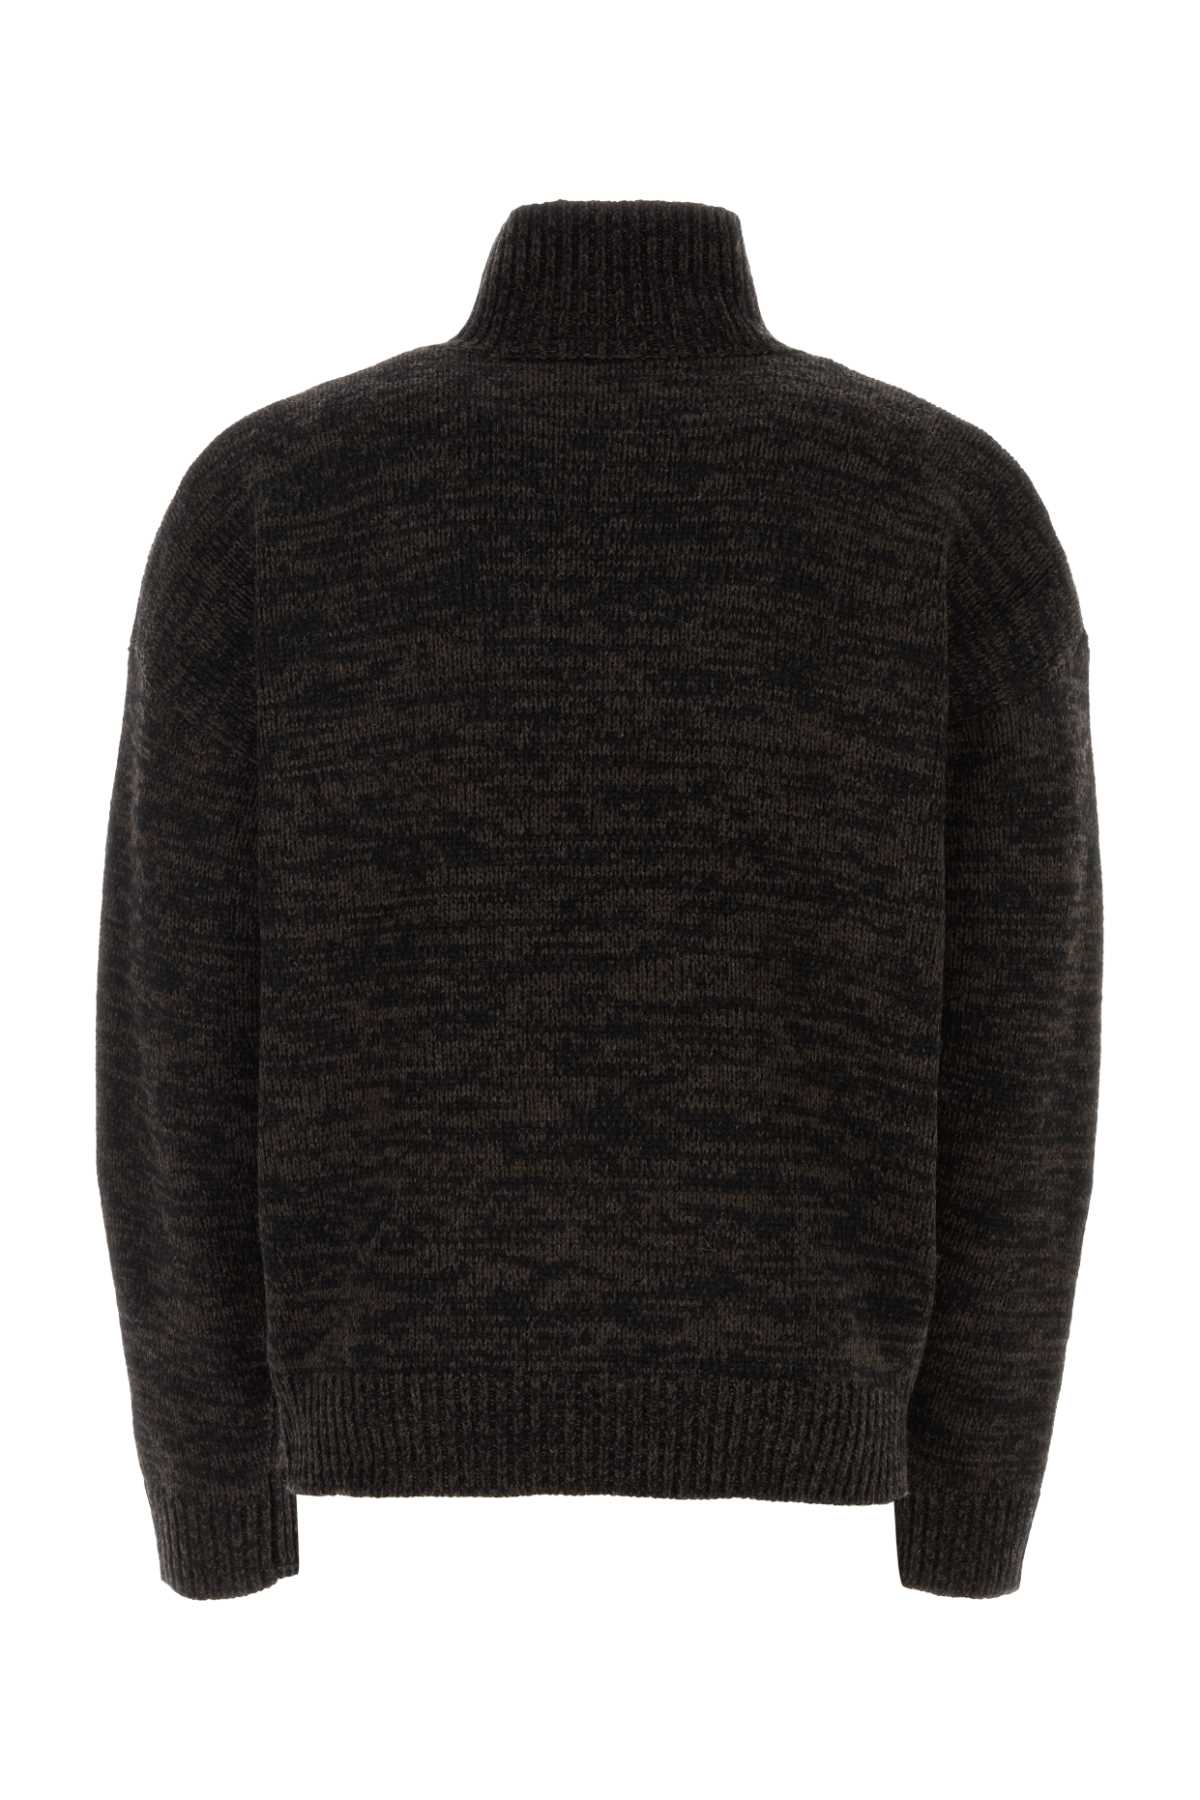 Etudes Studio Two-tone Wool Sweater In Blackbrown